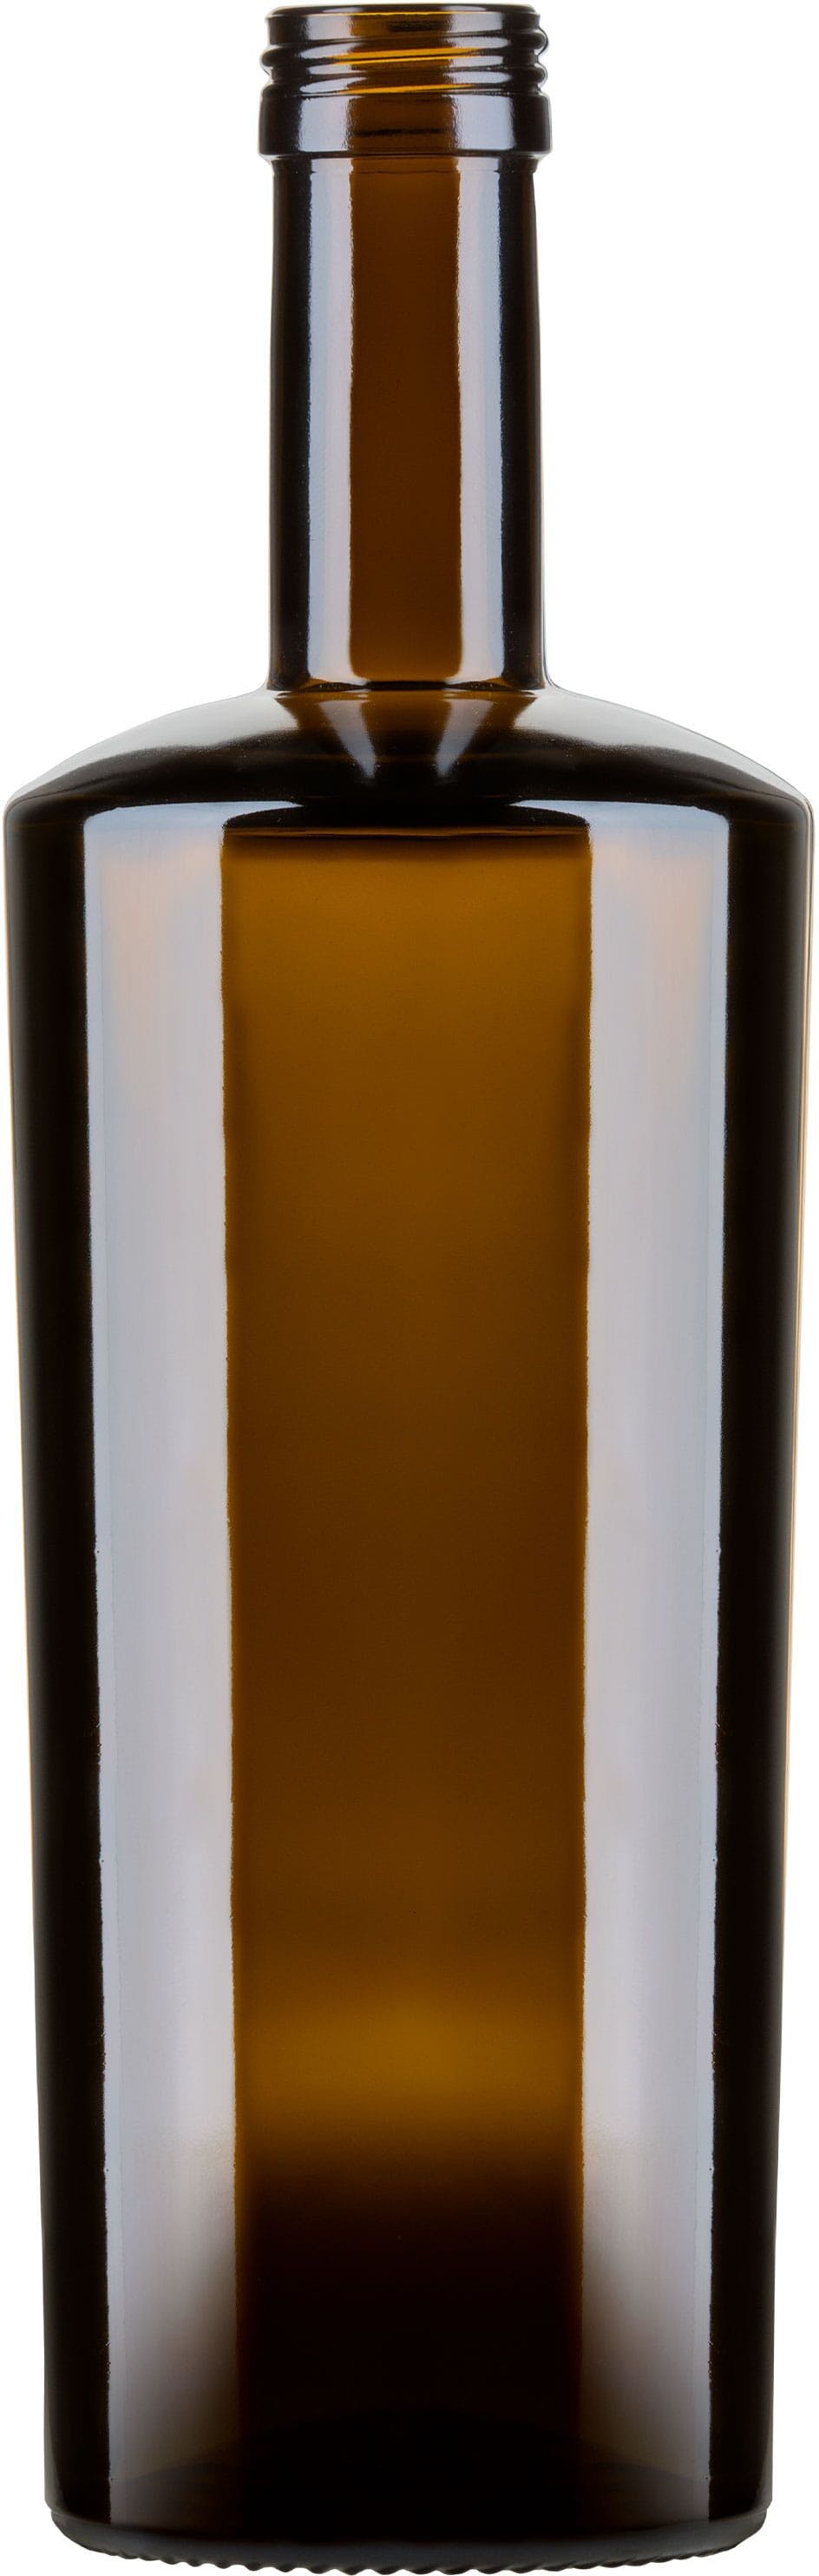 Flasche ALEX  OLIO 750 ml BG-Drehverschluss 